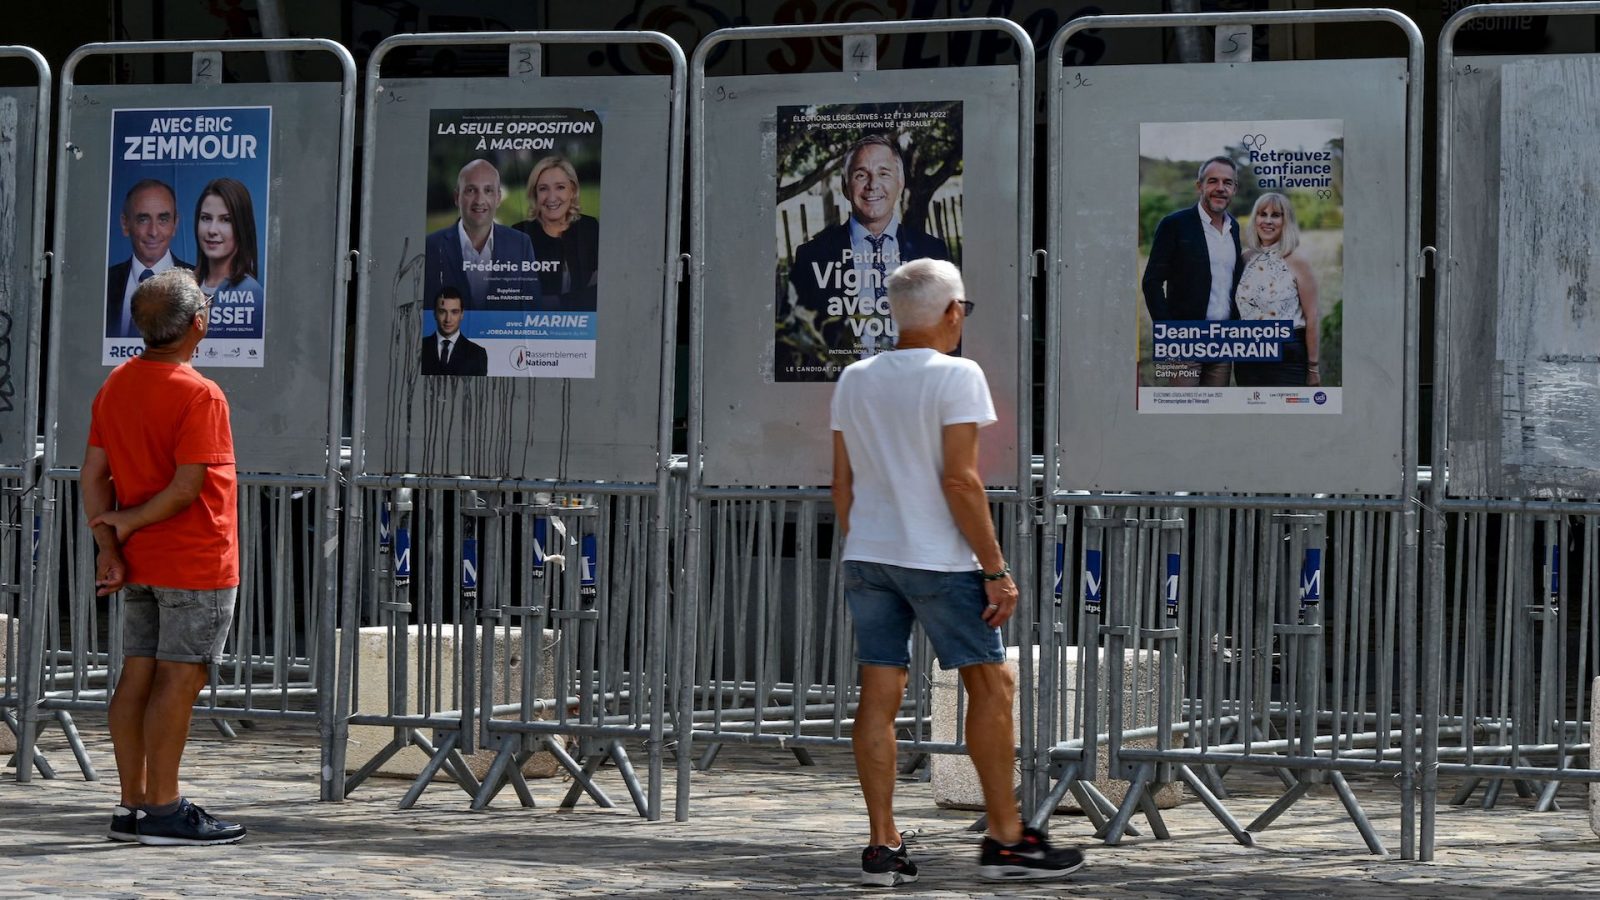 الدور الأوّل للانتخابات التشريعية في فرنسا/ مراكزالاقتراع تفتح أبوابها أمام الناخبين